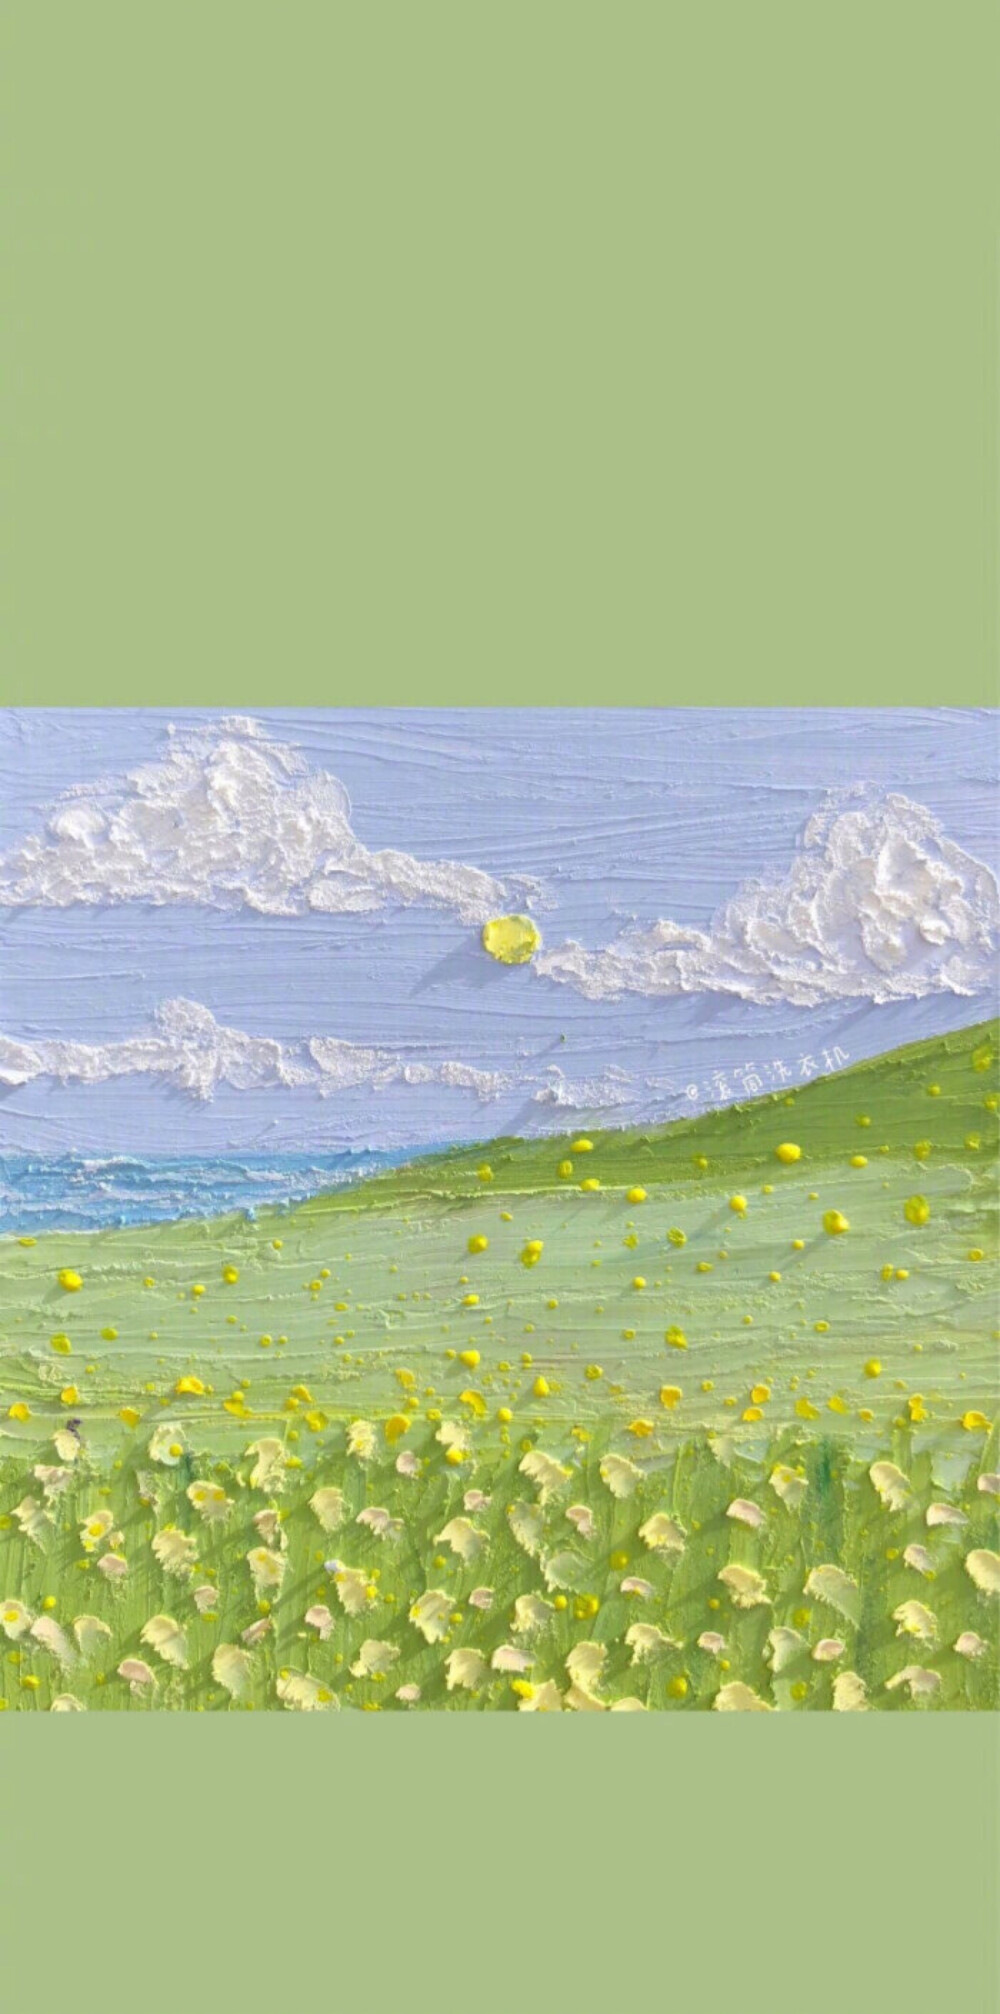 油画壁纸 - 风景花朵 cr:@部分见水印渐变纯色/手绘壁纸/聊天背景/小